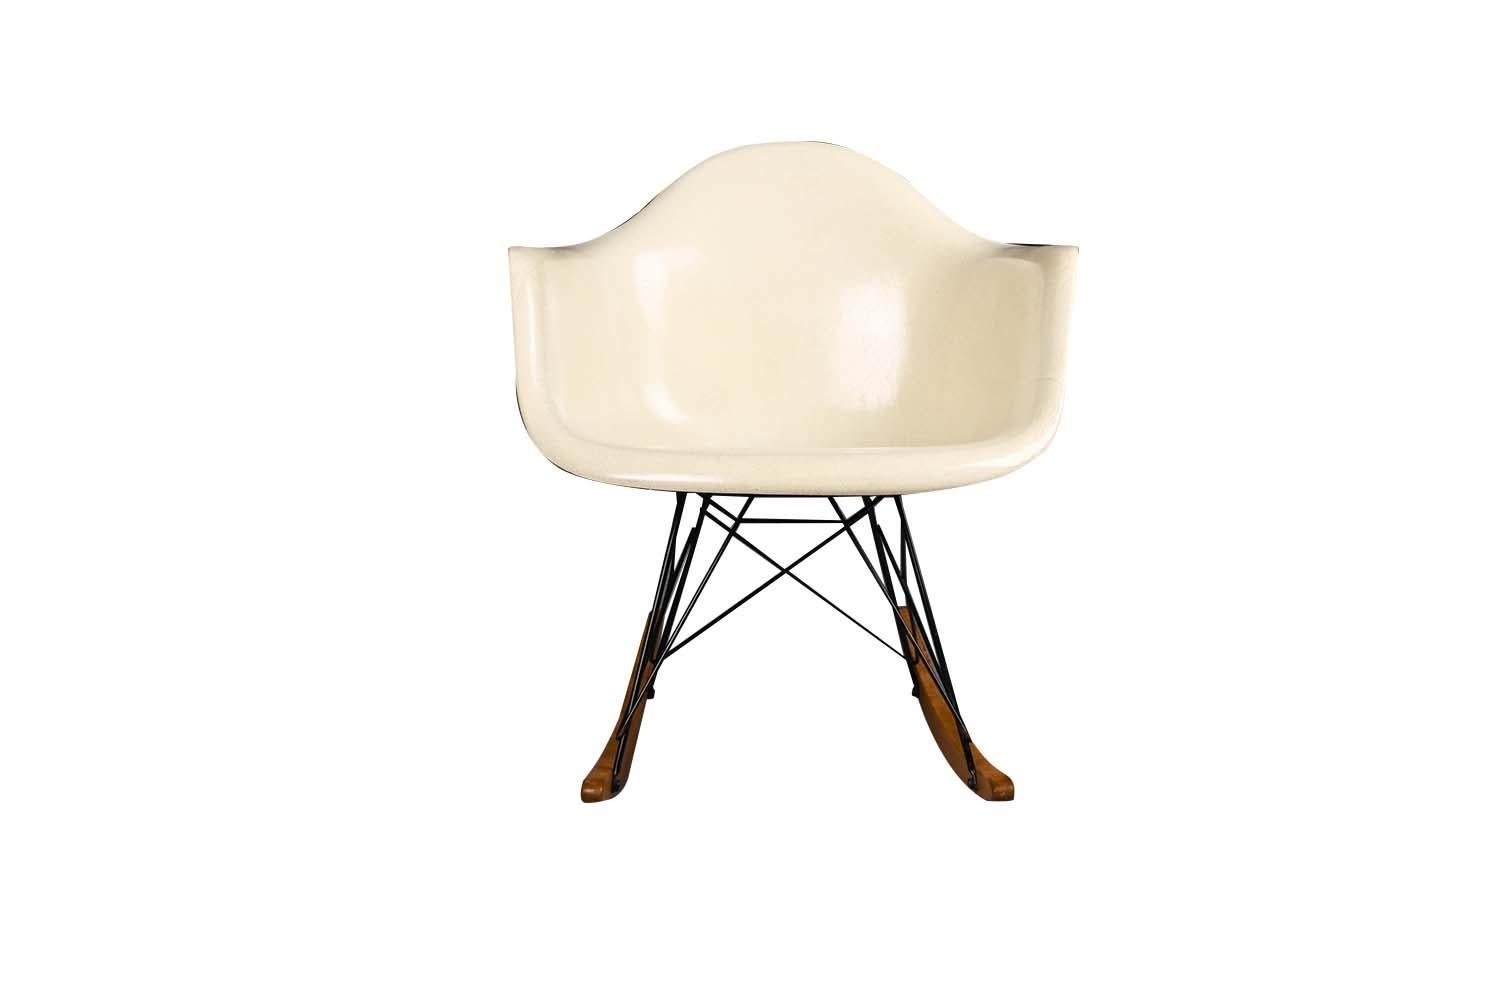 Authentique et rare fauteuil à bascule RAR (Mid-Century Modern) conçu par Charles et Ray Eames pour Herman Miller. Cette magnifique chaise à bascule du milieu du siècle a été produite entre 1956 et 1959. Il s'agit d'une ancienne chaise à bascule